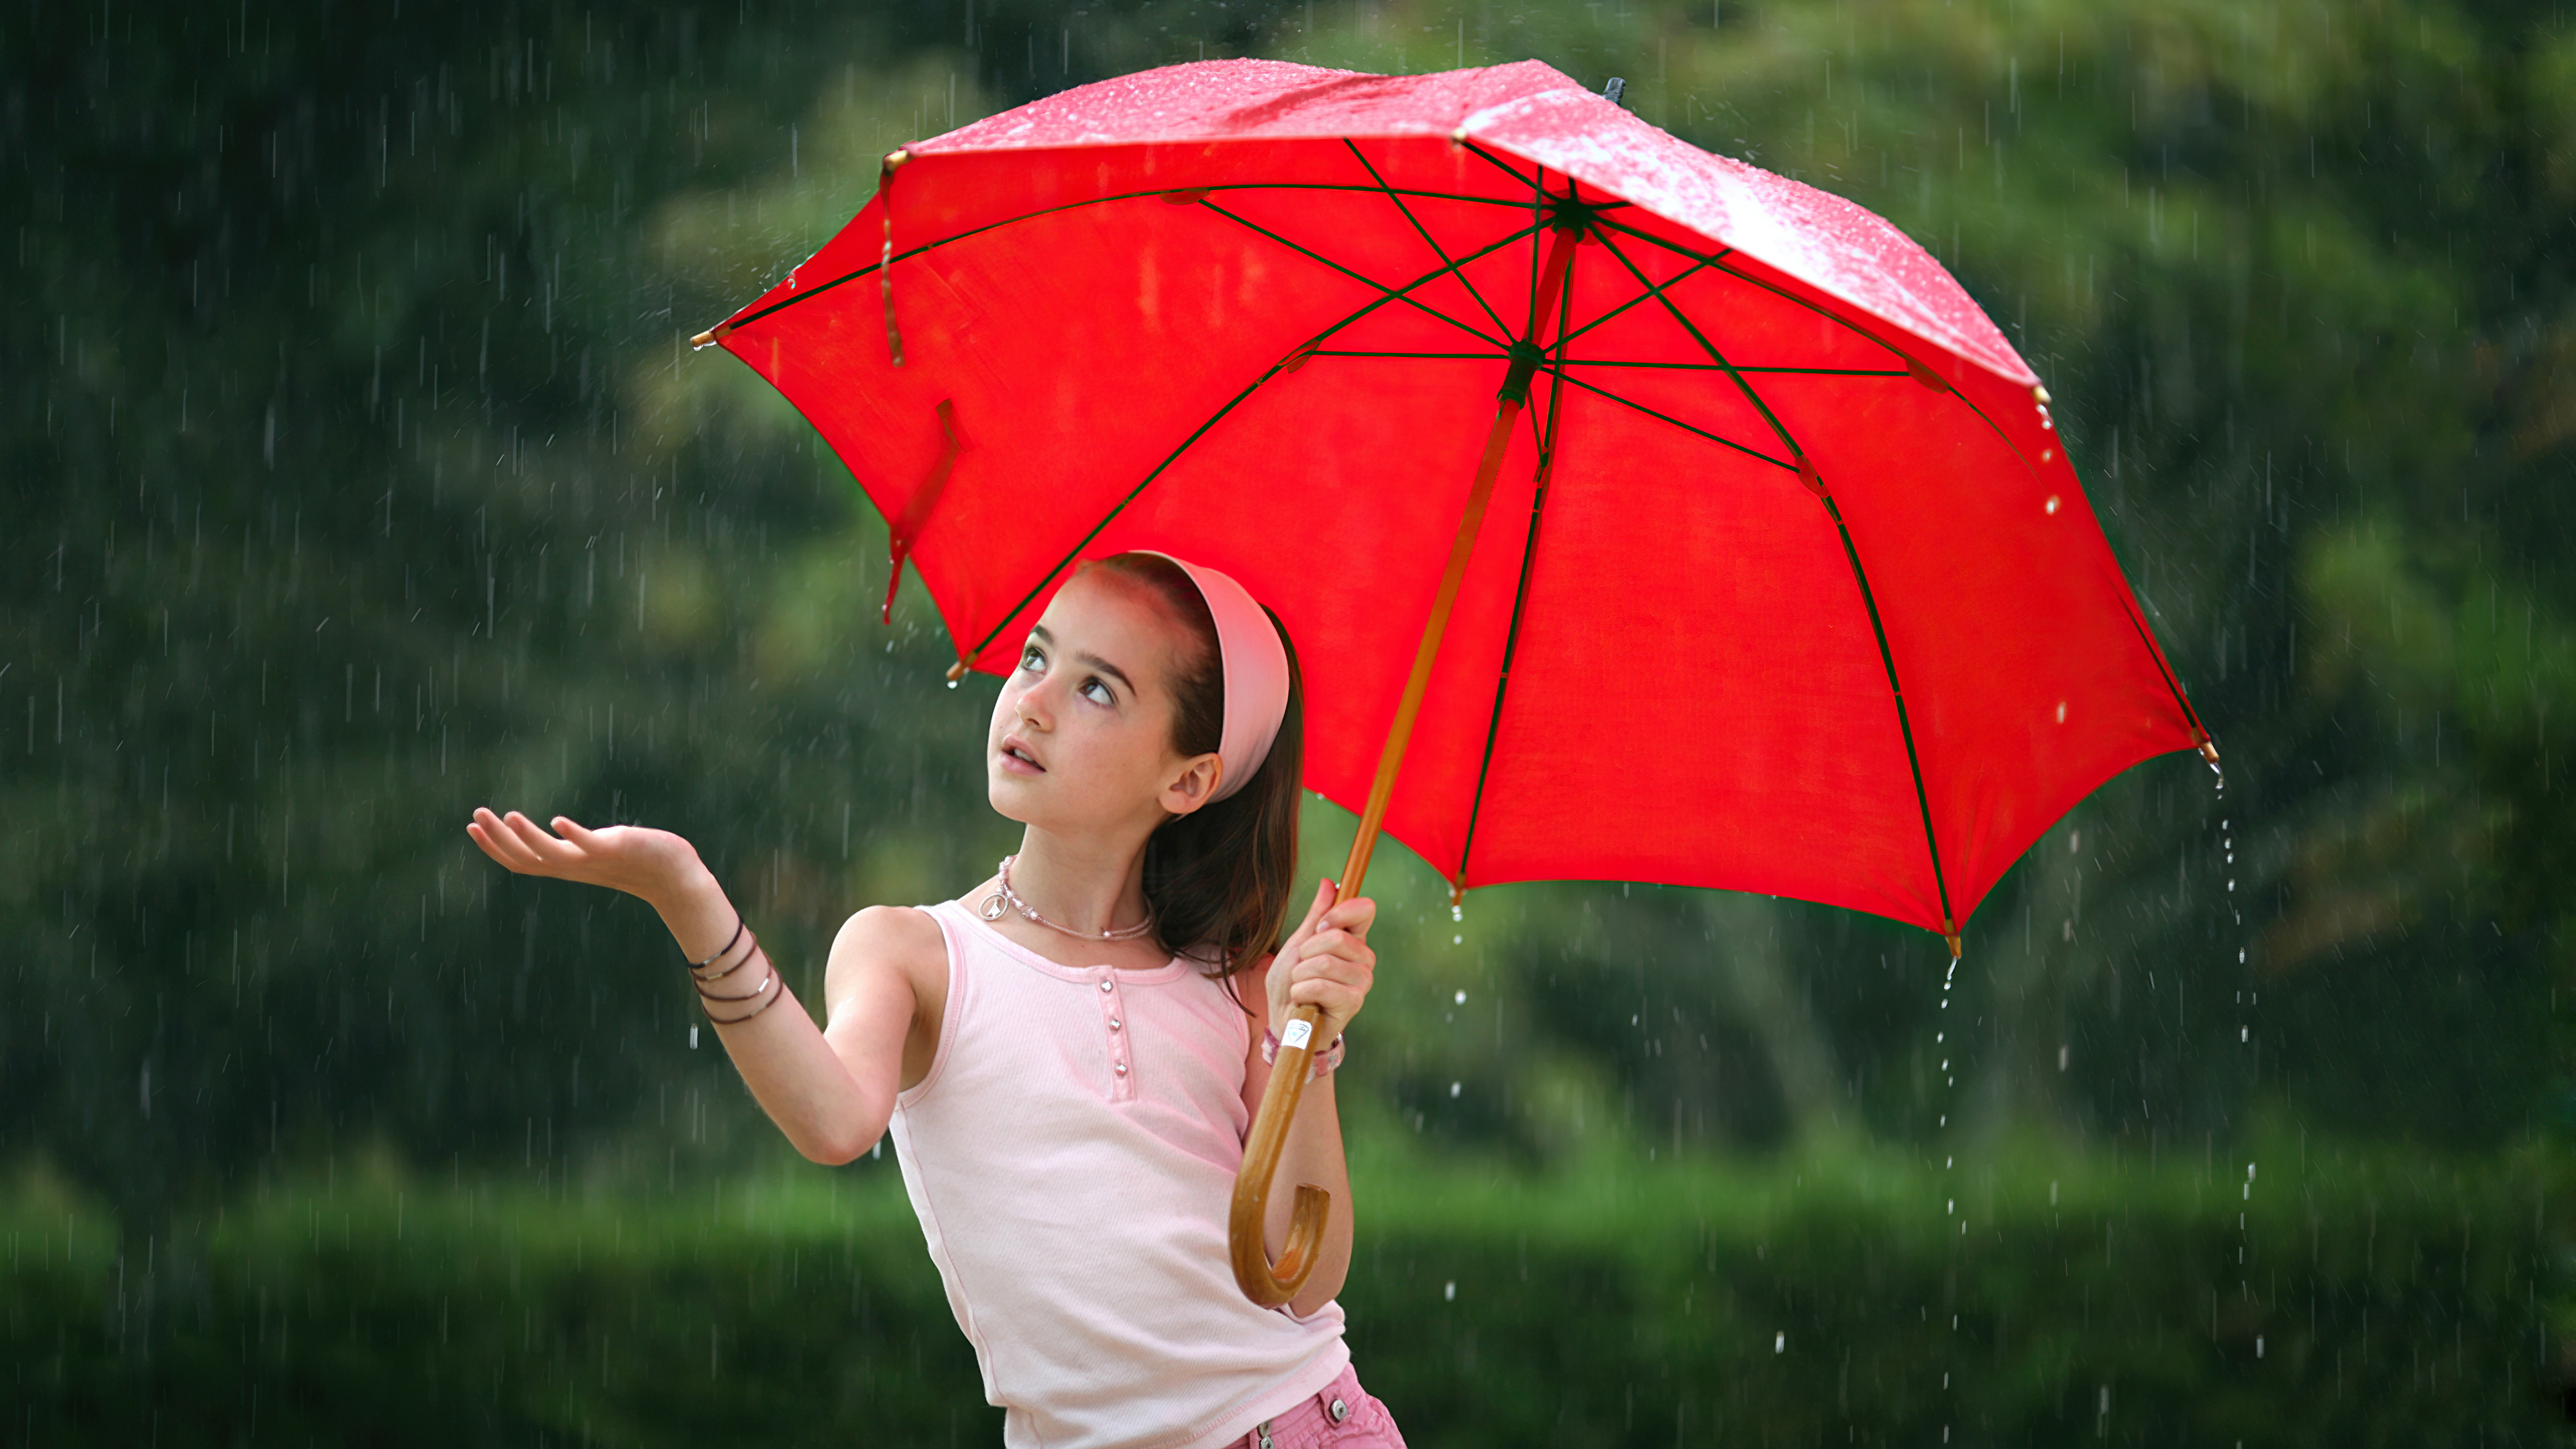 Одолжил ей зонтик. Девушка с зонтом. Девочка с зонтиком. Девочка под зонтом. Человек с зонтом.